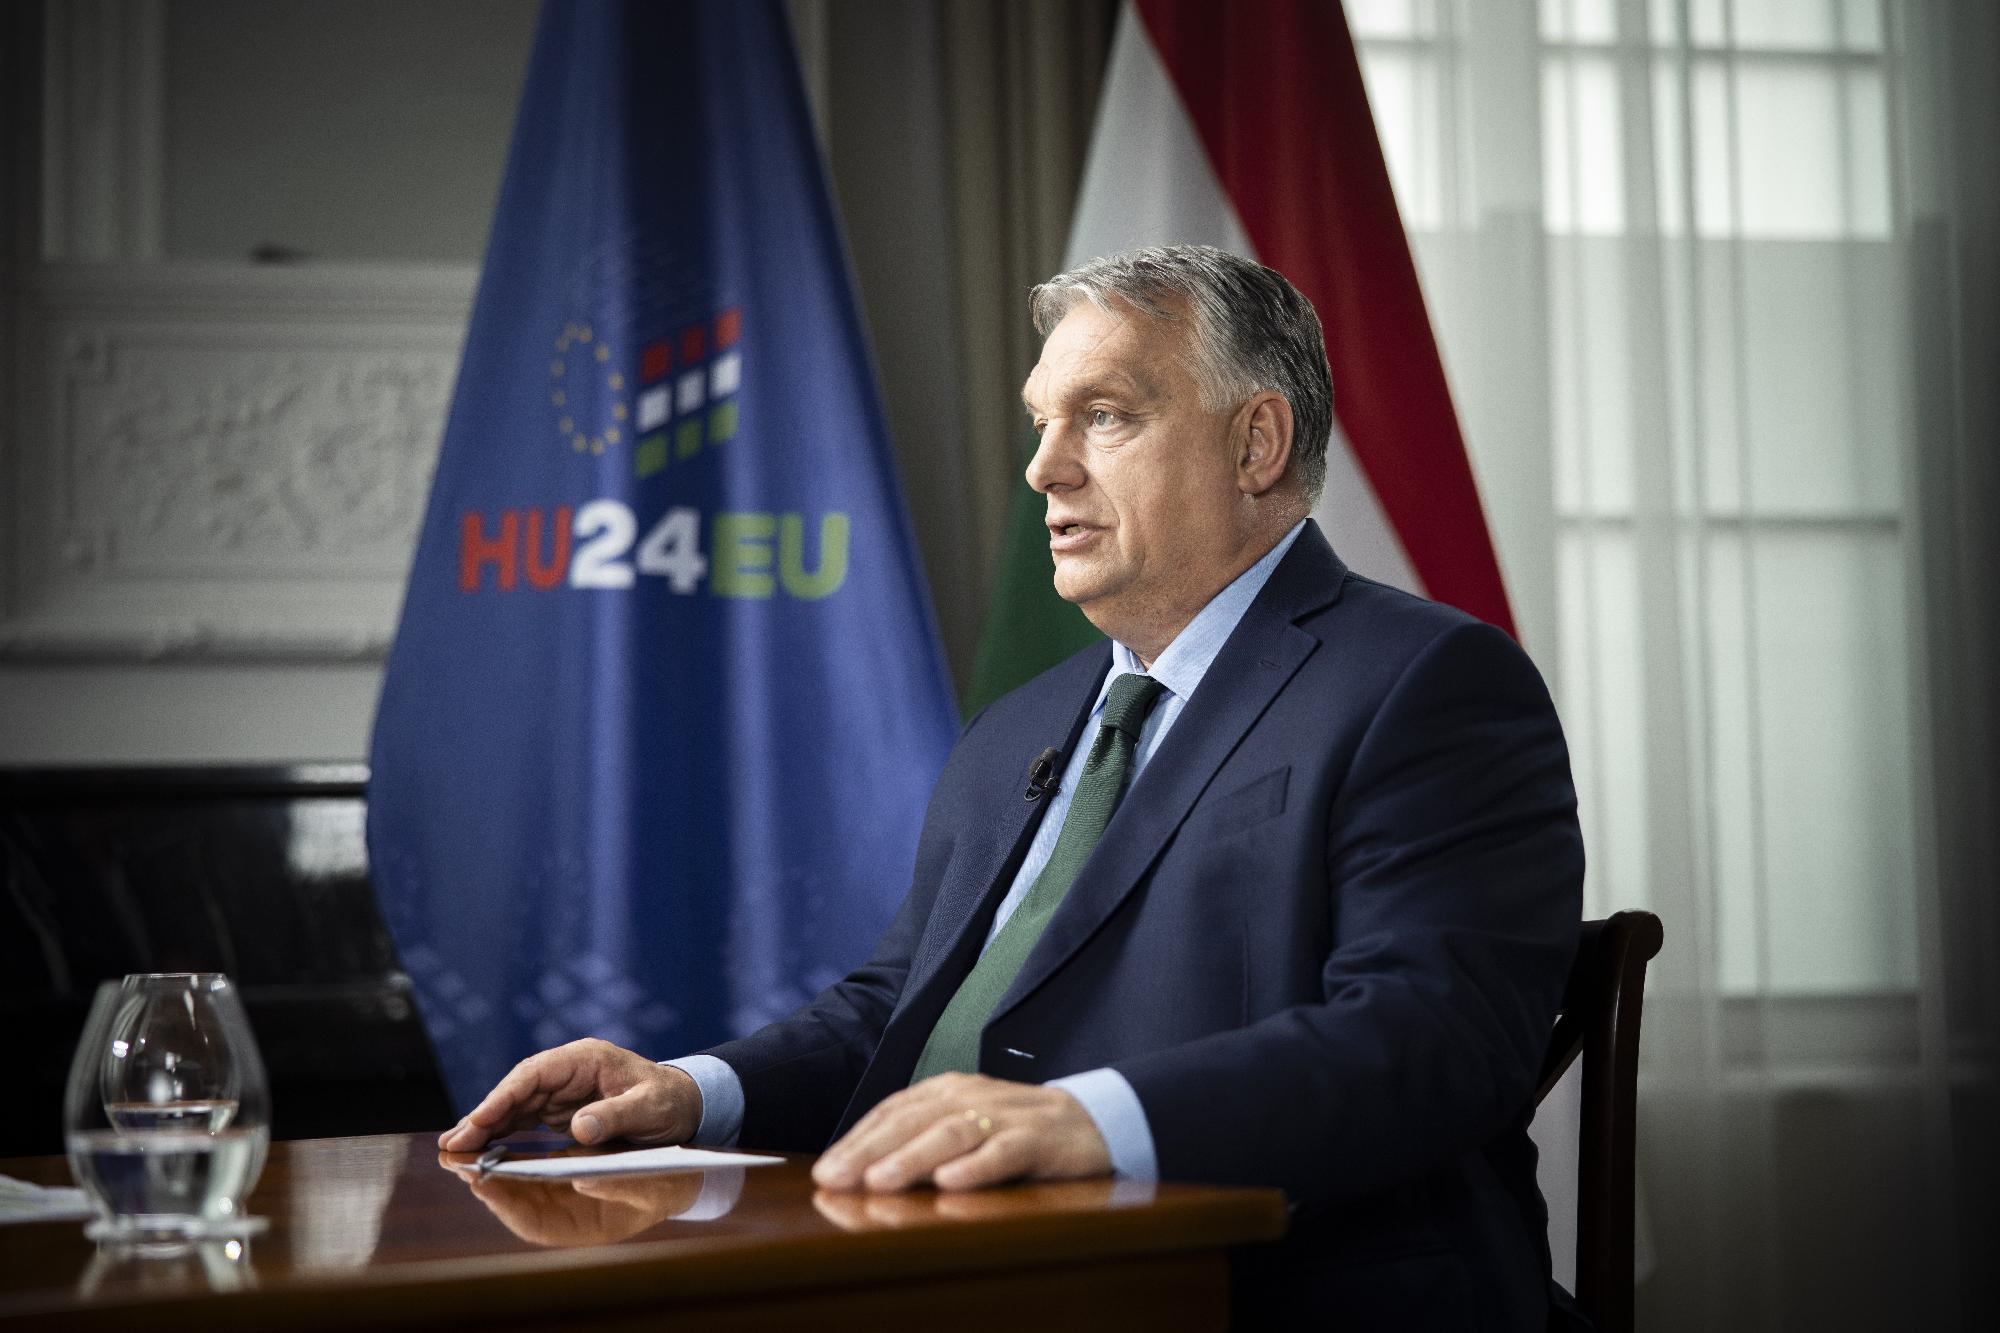 Óriási az orosz sajtóérdeklődés Orbán Viktor moszkvai látogatása iránt